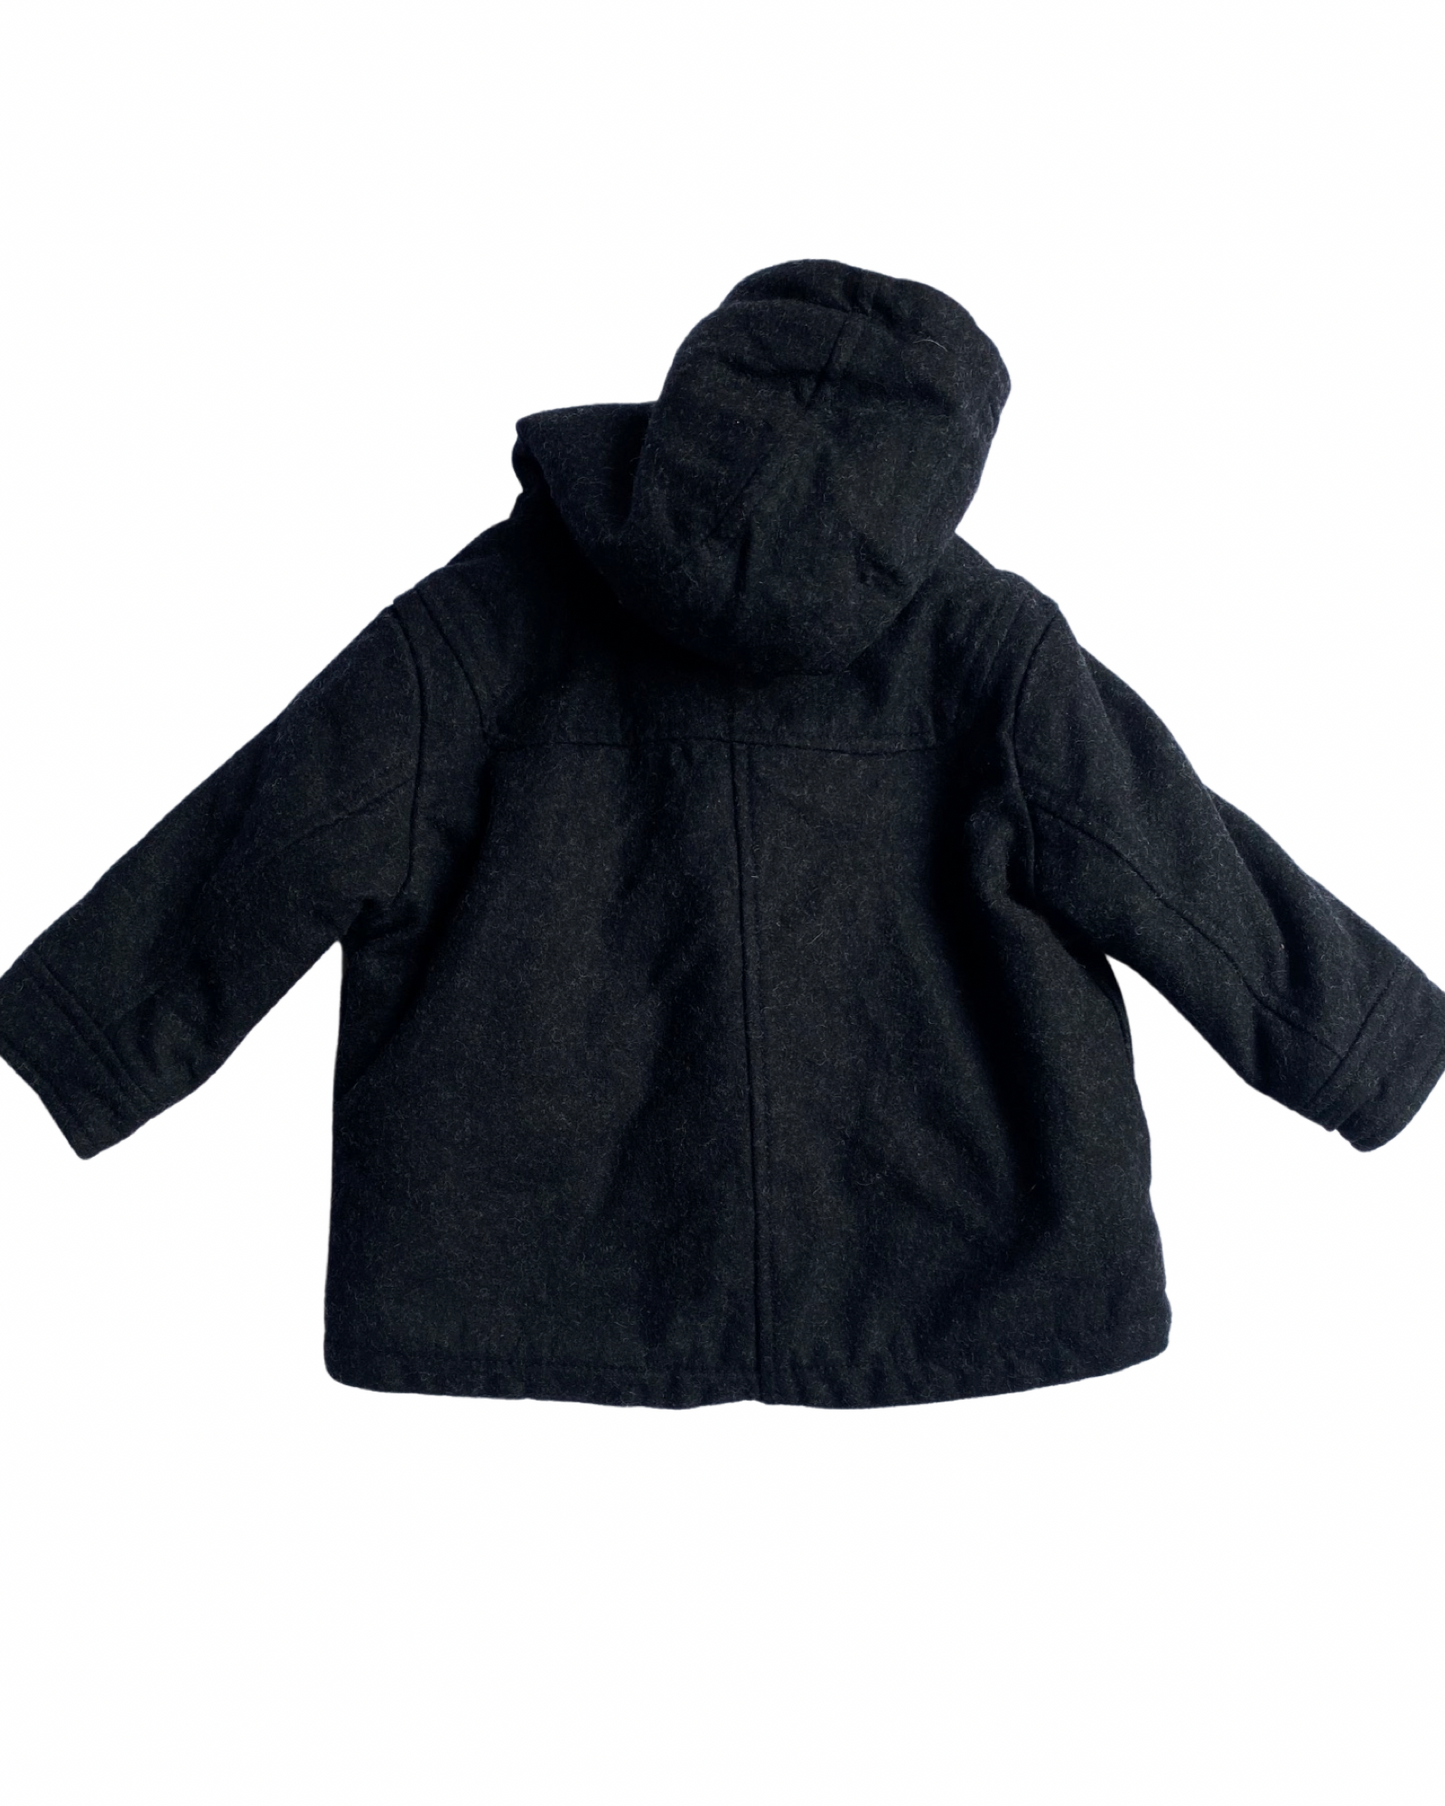 M&S flecked charcoal duffle coat (6-9mths)